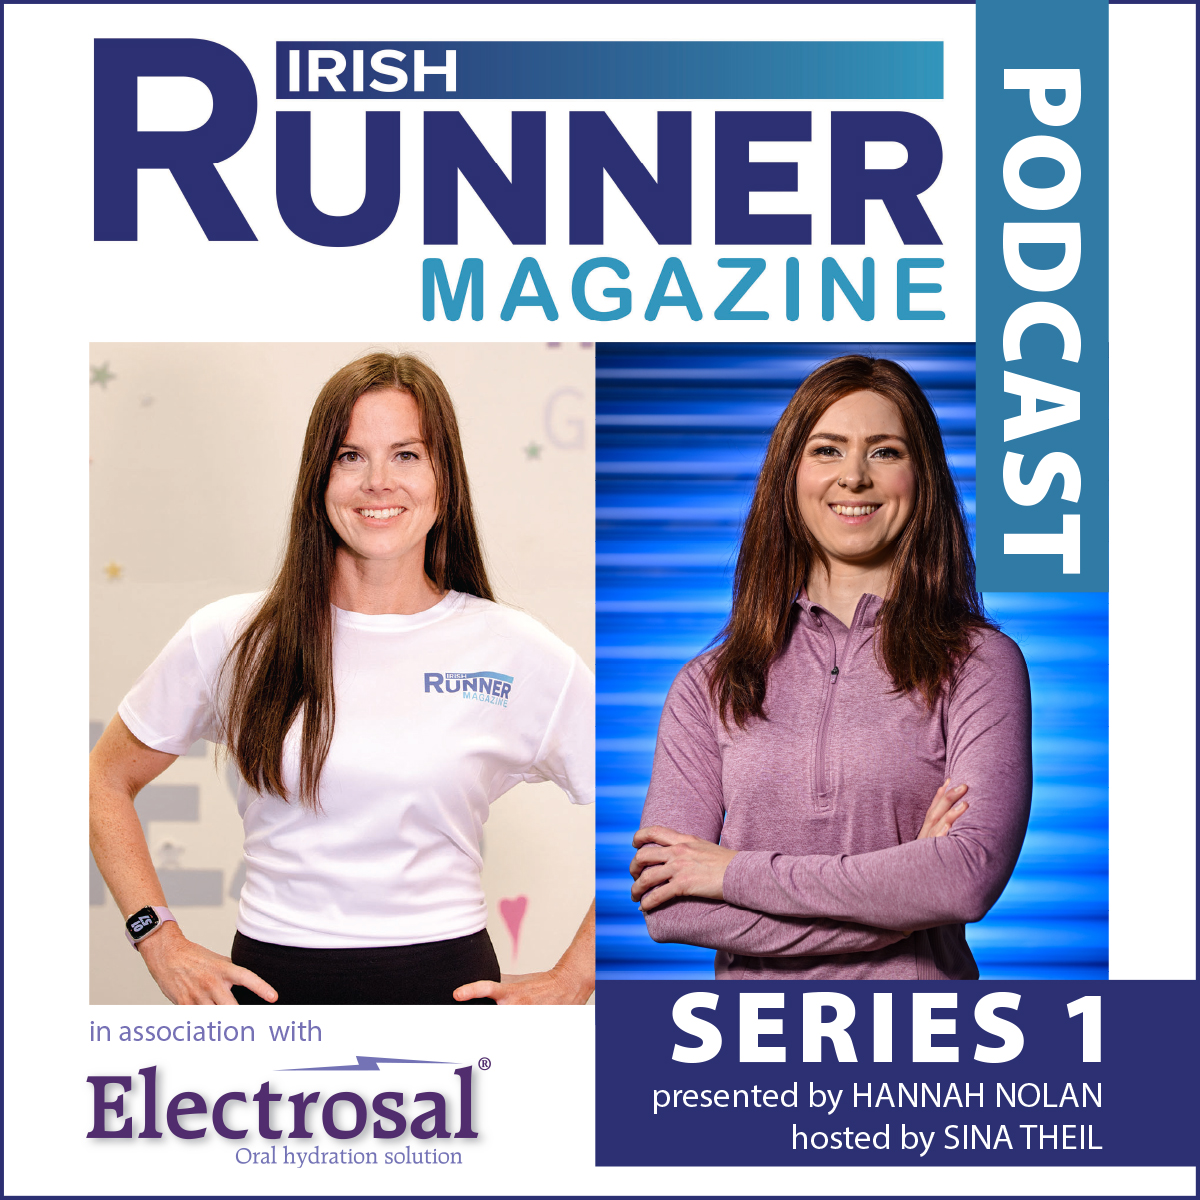 Irish Runner Magazine Podcast – Series 1 Episode 3